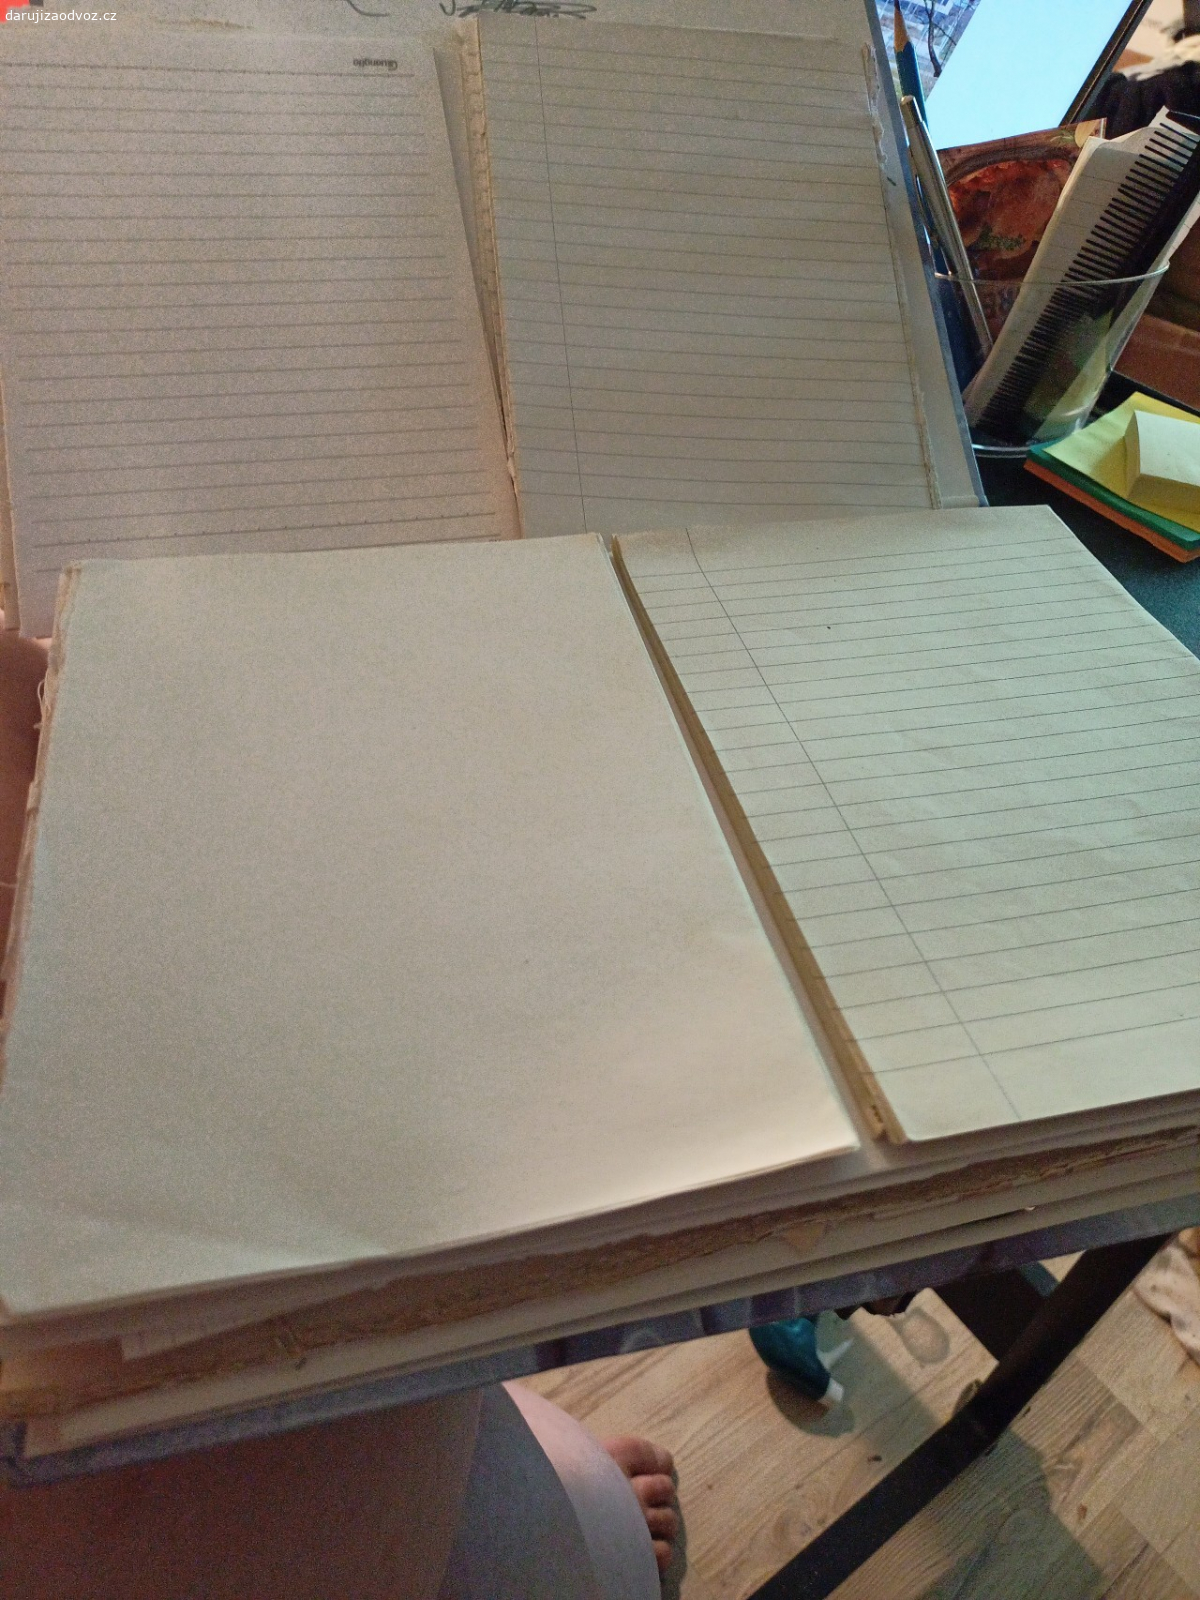 Desky volných papíru. zbytky bloků, sešitu, volné listy včetně desek. lze zaslat